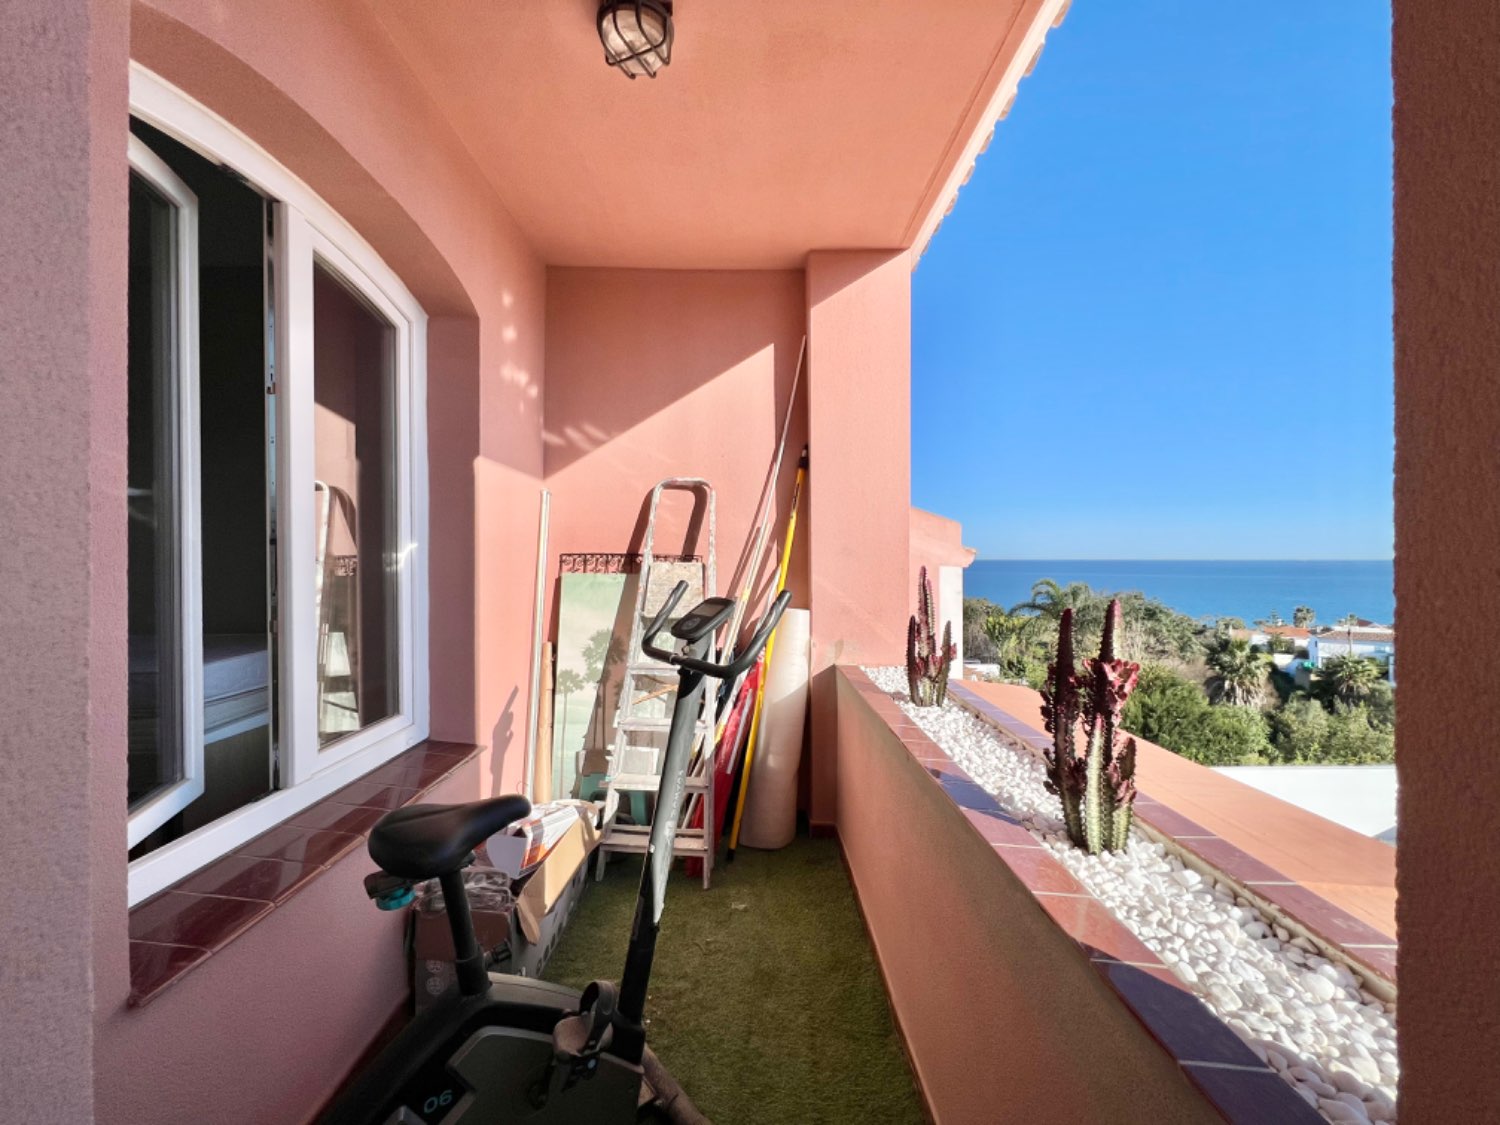 Encantadora casa adosada con jardin  de tres dormitorios en Alcaidesa a escasos metros de la playa